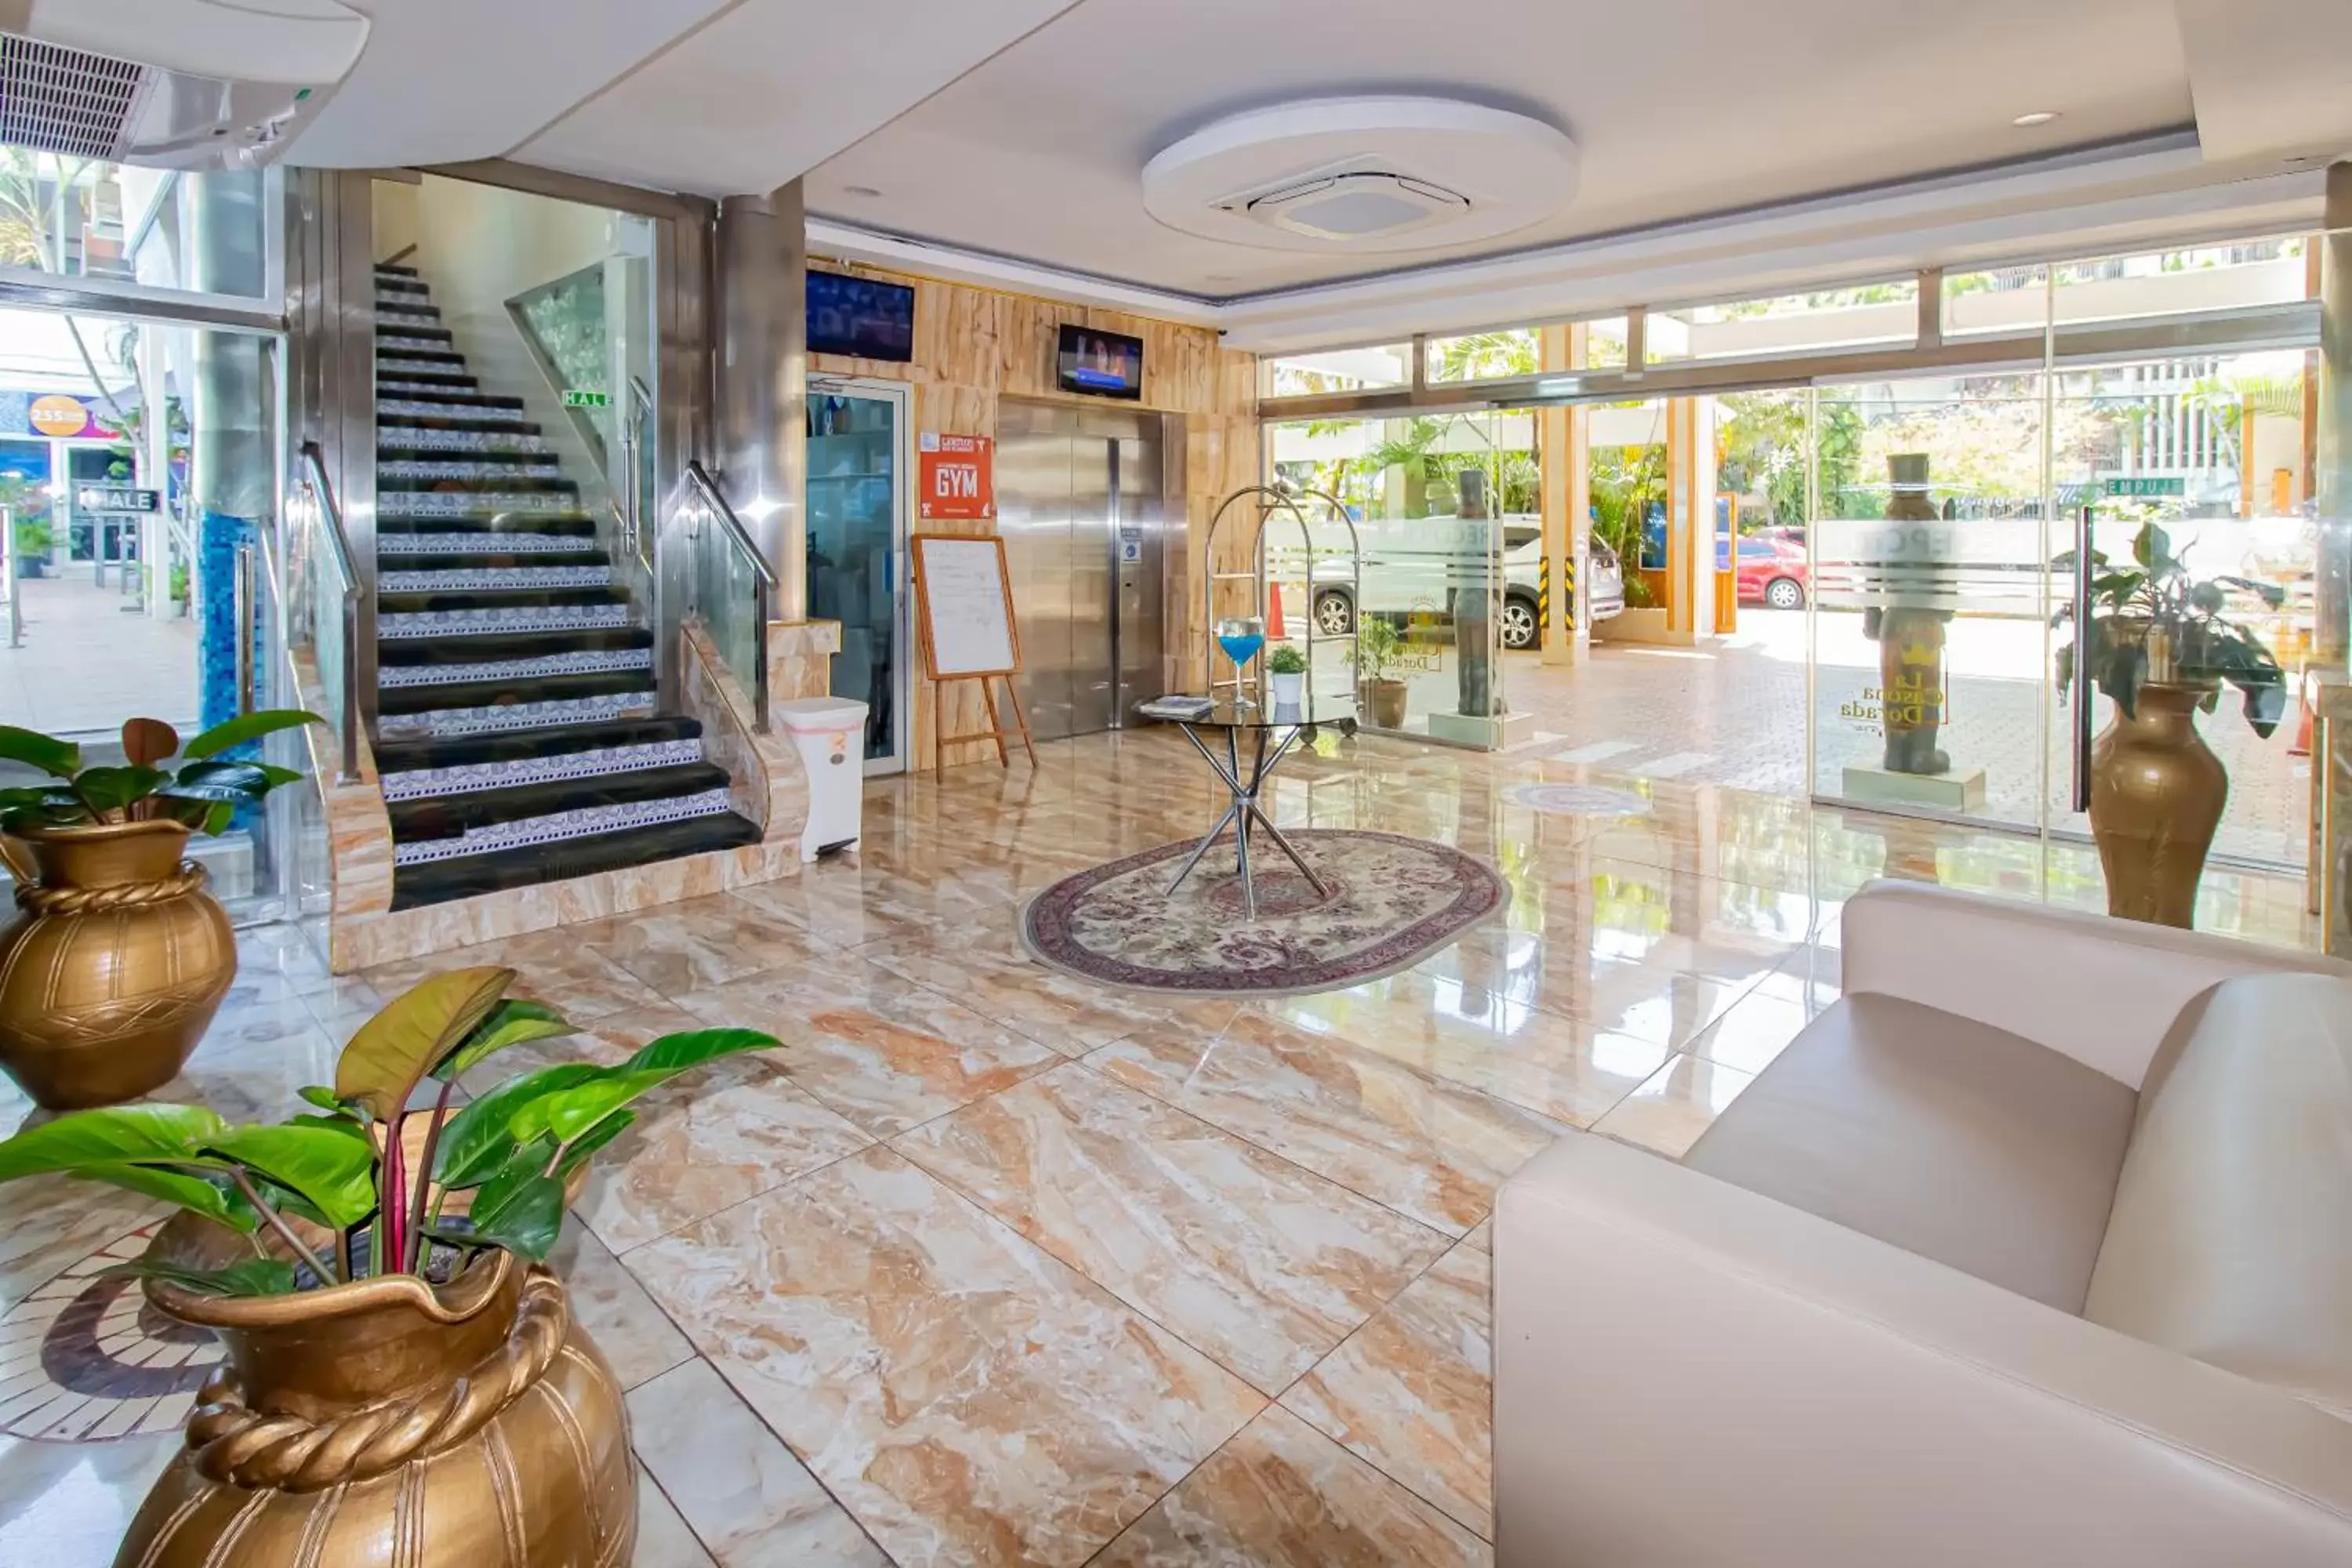 Lobby or reception, Lobby/Reception in Hotel La Casona Dorada